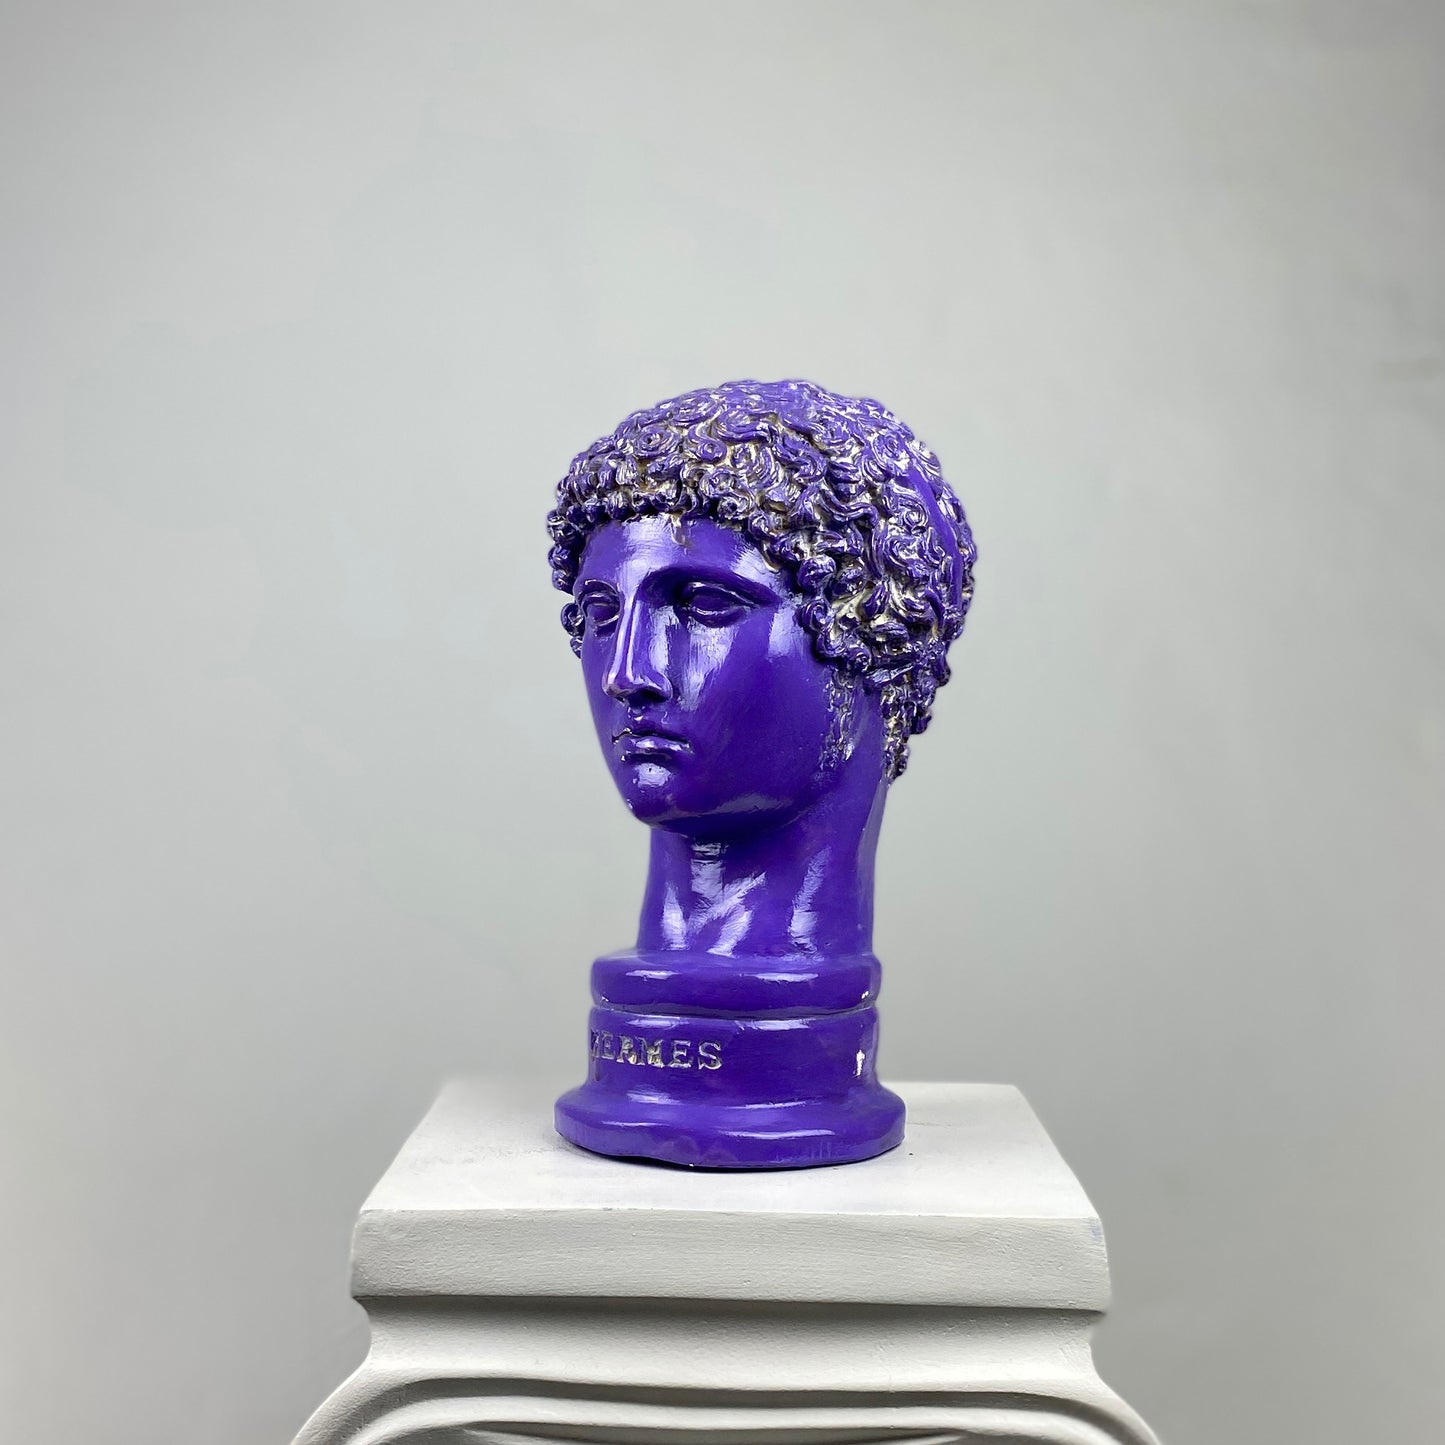 Hermes 'Purple Pearl' Pop Art Sculpture, Modern Home Decor